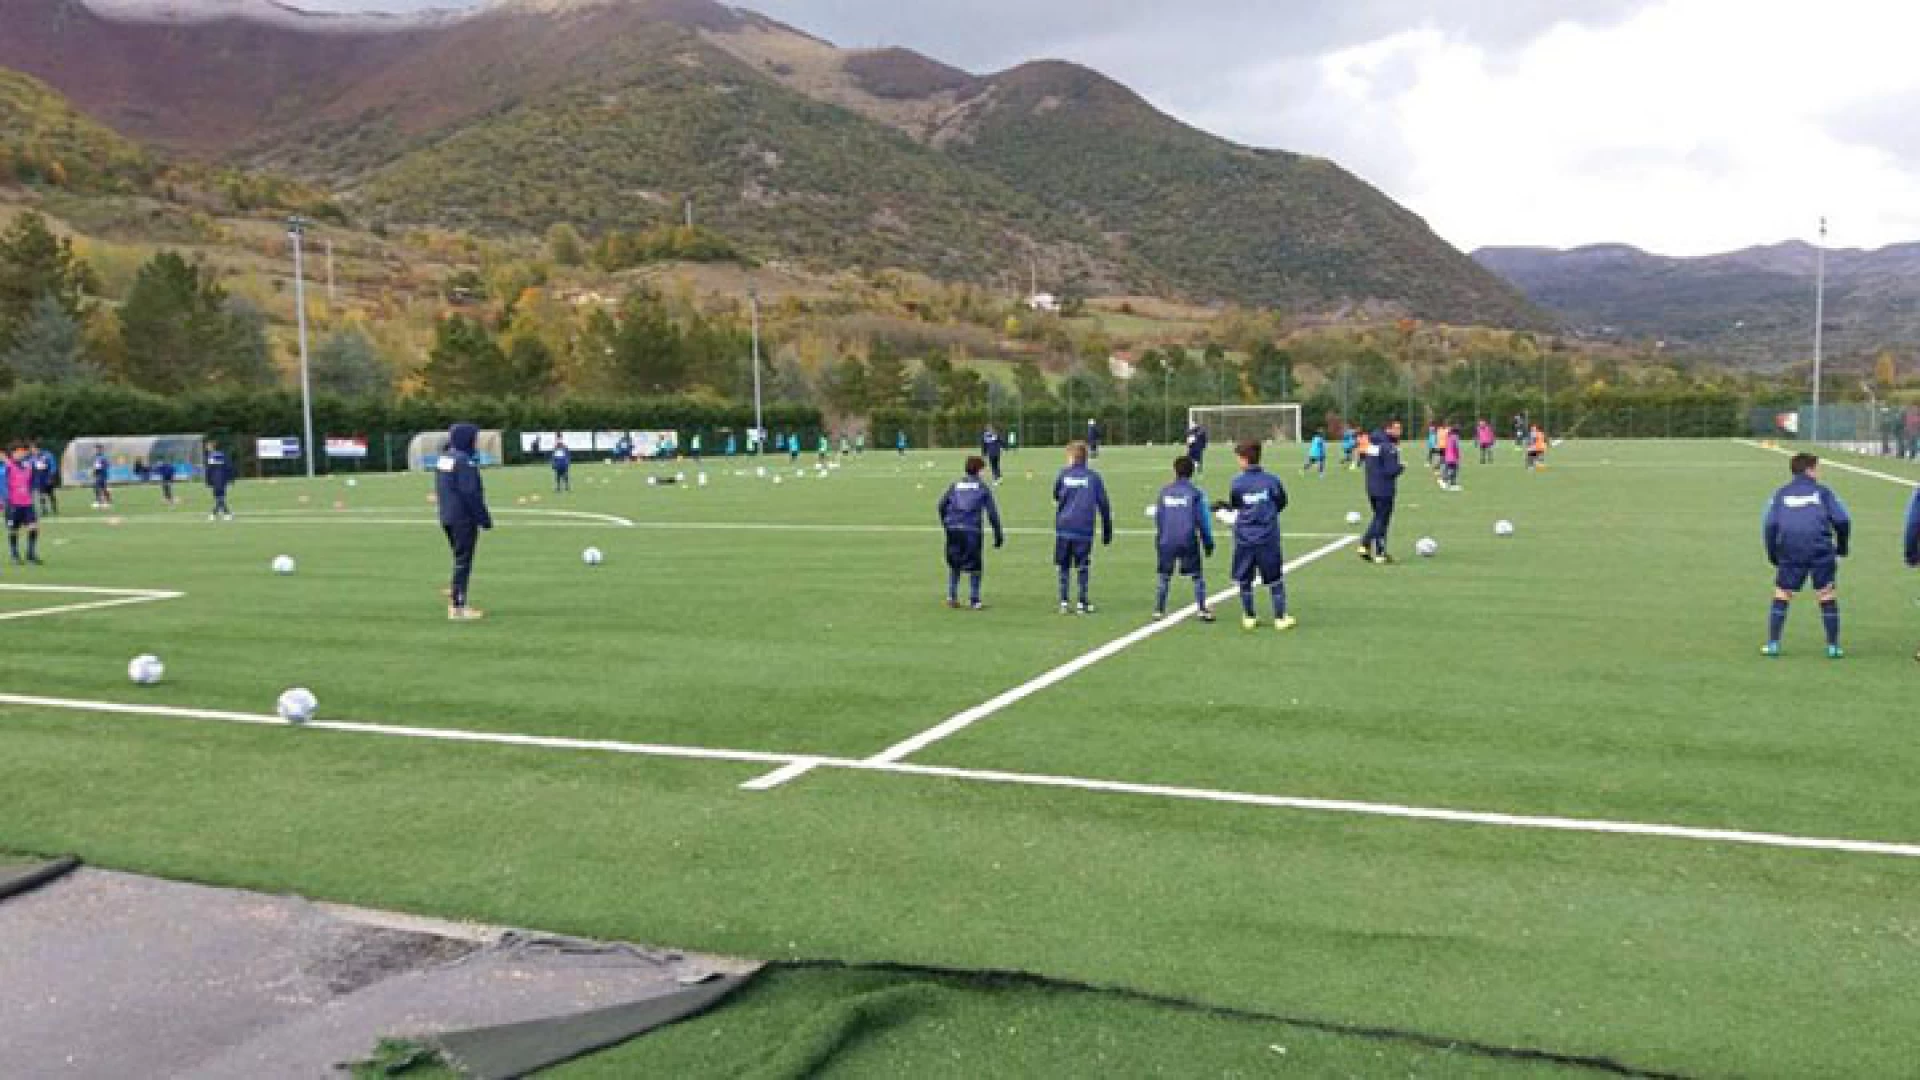 Calcio giovanile e formazione tecnica: continua l’avventura dei tecnici e calciatori della Boys Roccaravindola al centro federale territoriale di Castel Di Sangro.